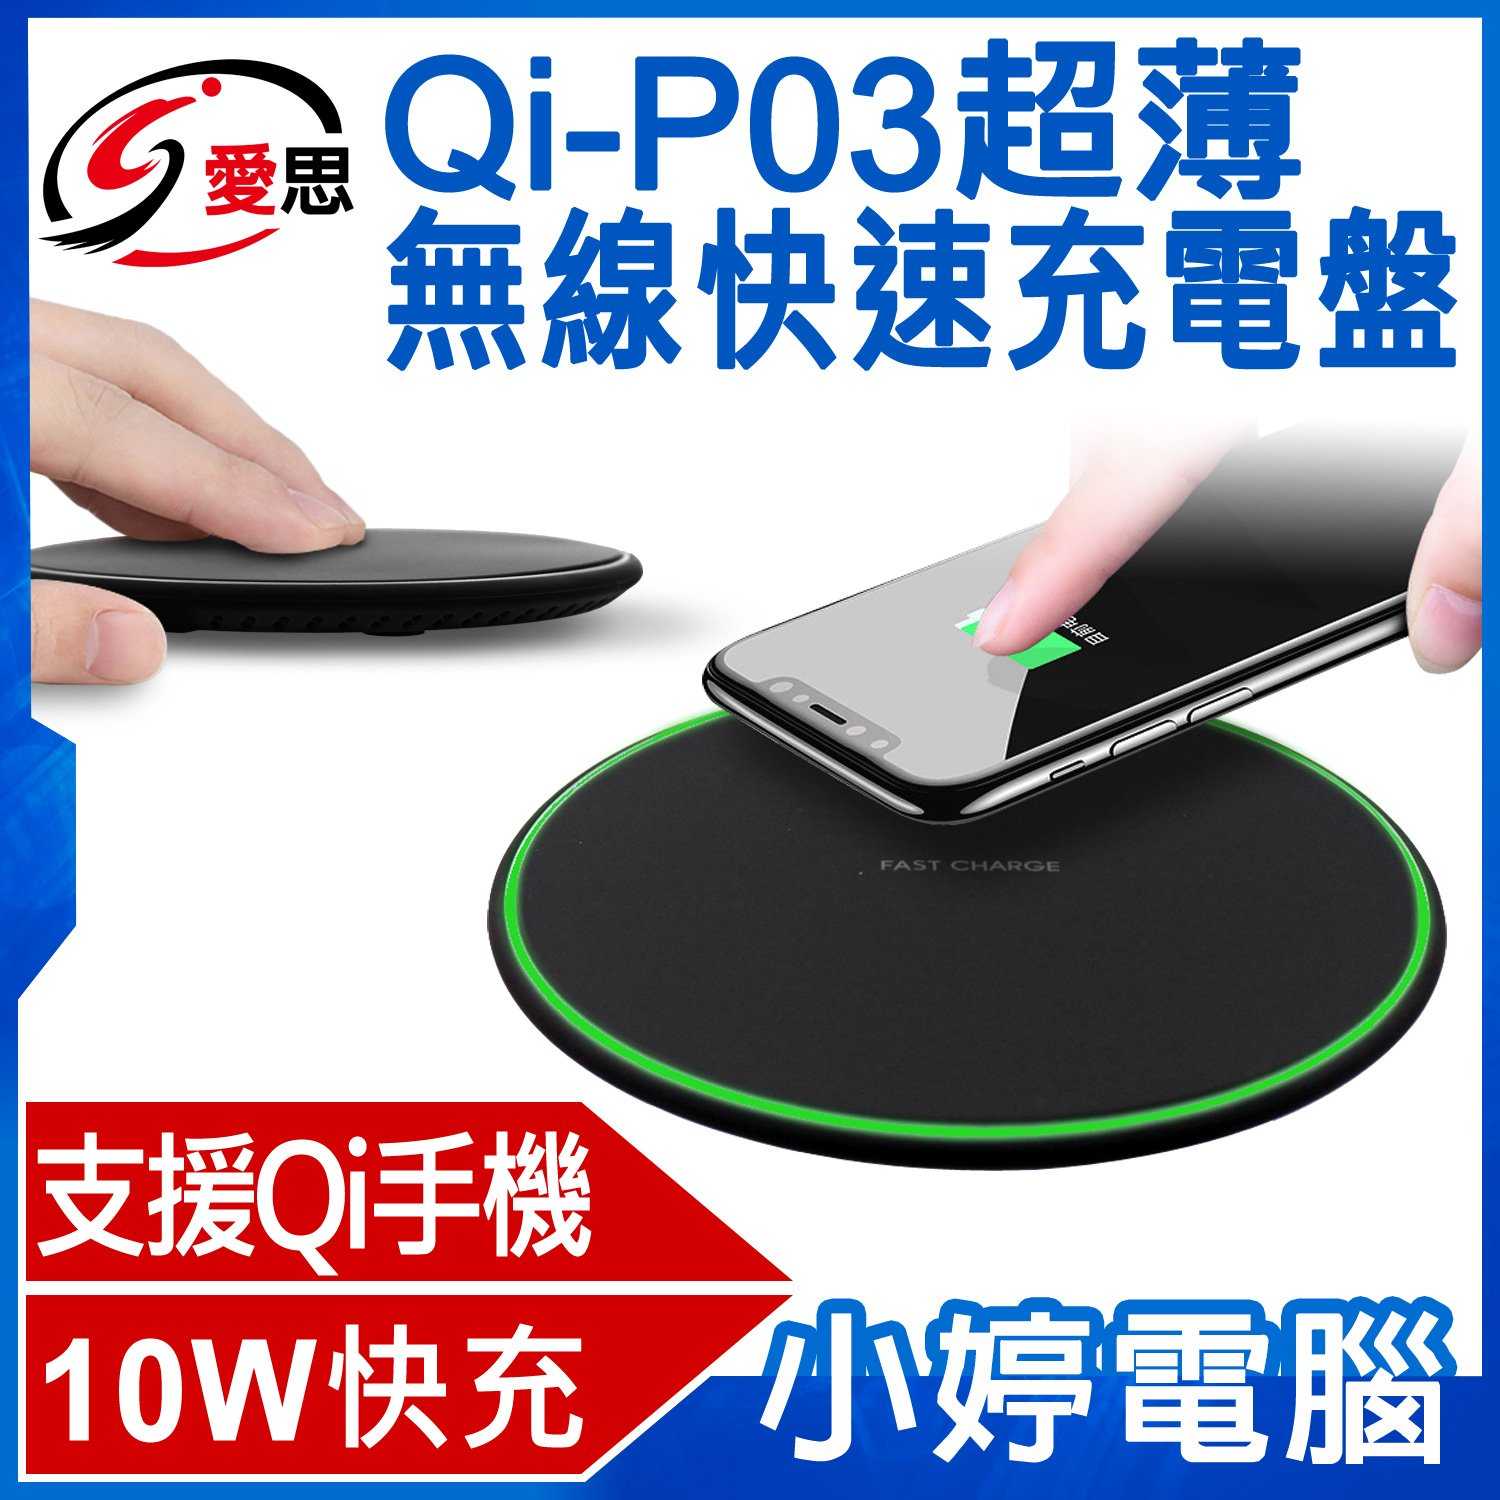 【小婷電腦】IS愛思 Qi-P03超薄無線快速充電盤 10W快充 無線充電器 Qi充電器 Apple 三星